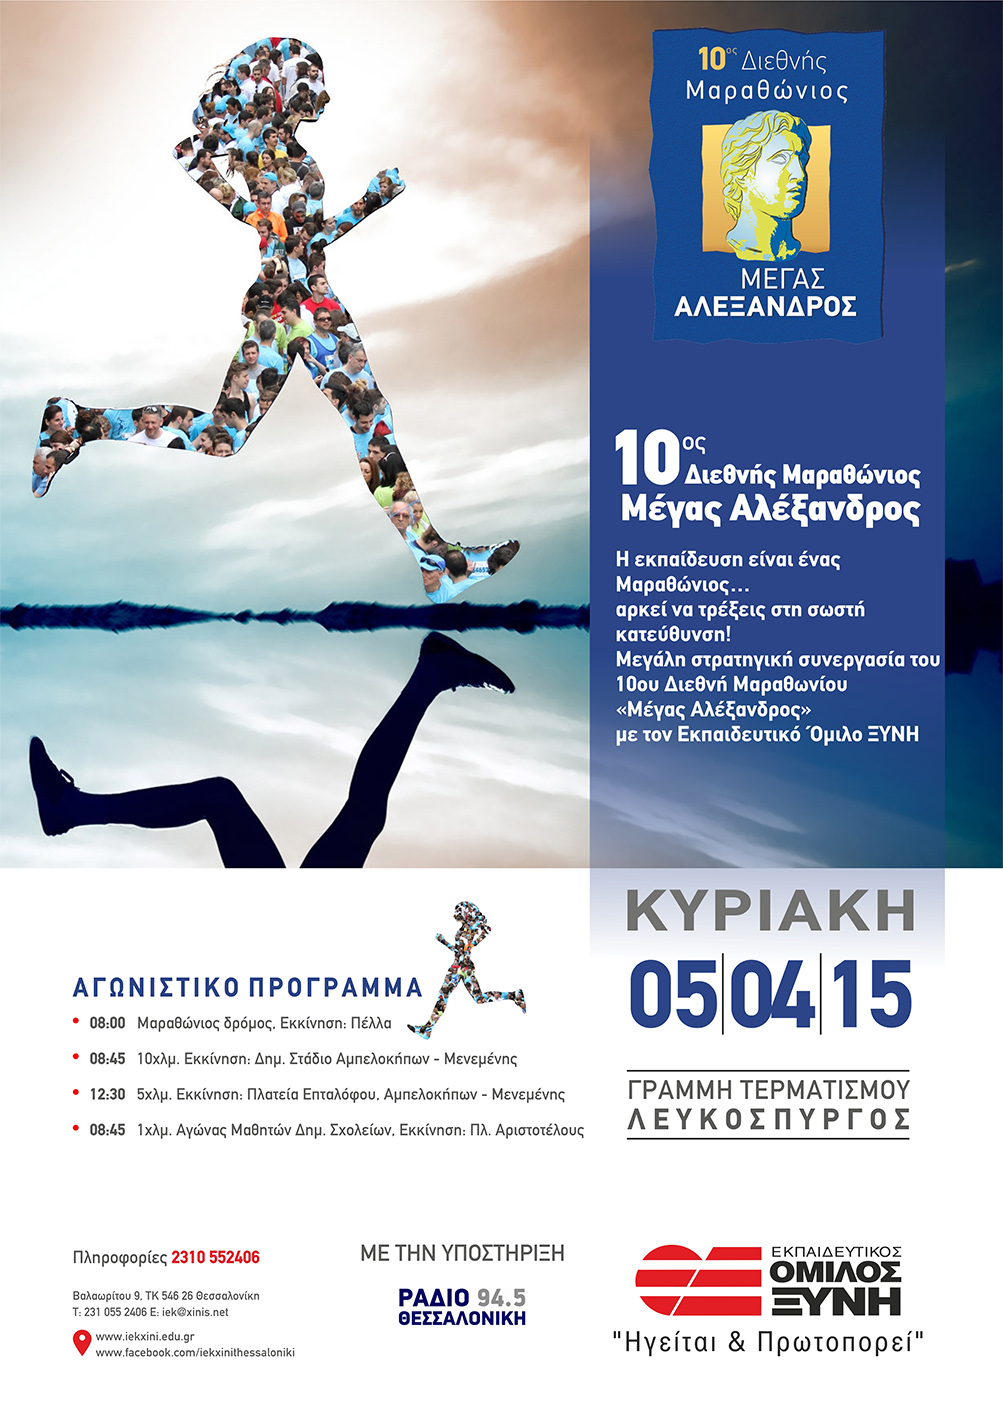 Η ομάδα Xinis Runners του ΙΕΚ ΞΥΝΗ Μακεδονίας στον 10ο Διεθνή Μαραθώνιο ¨Μέγας Αλέξανδρος¨